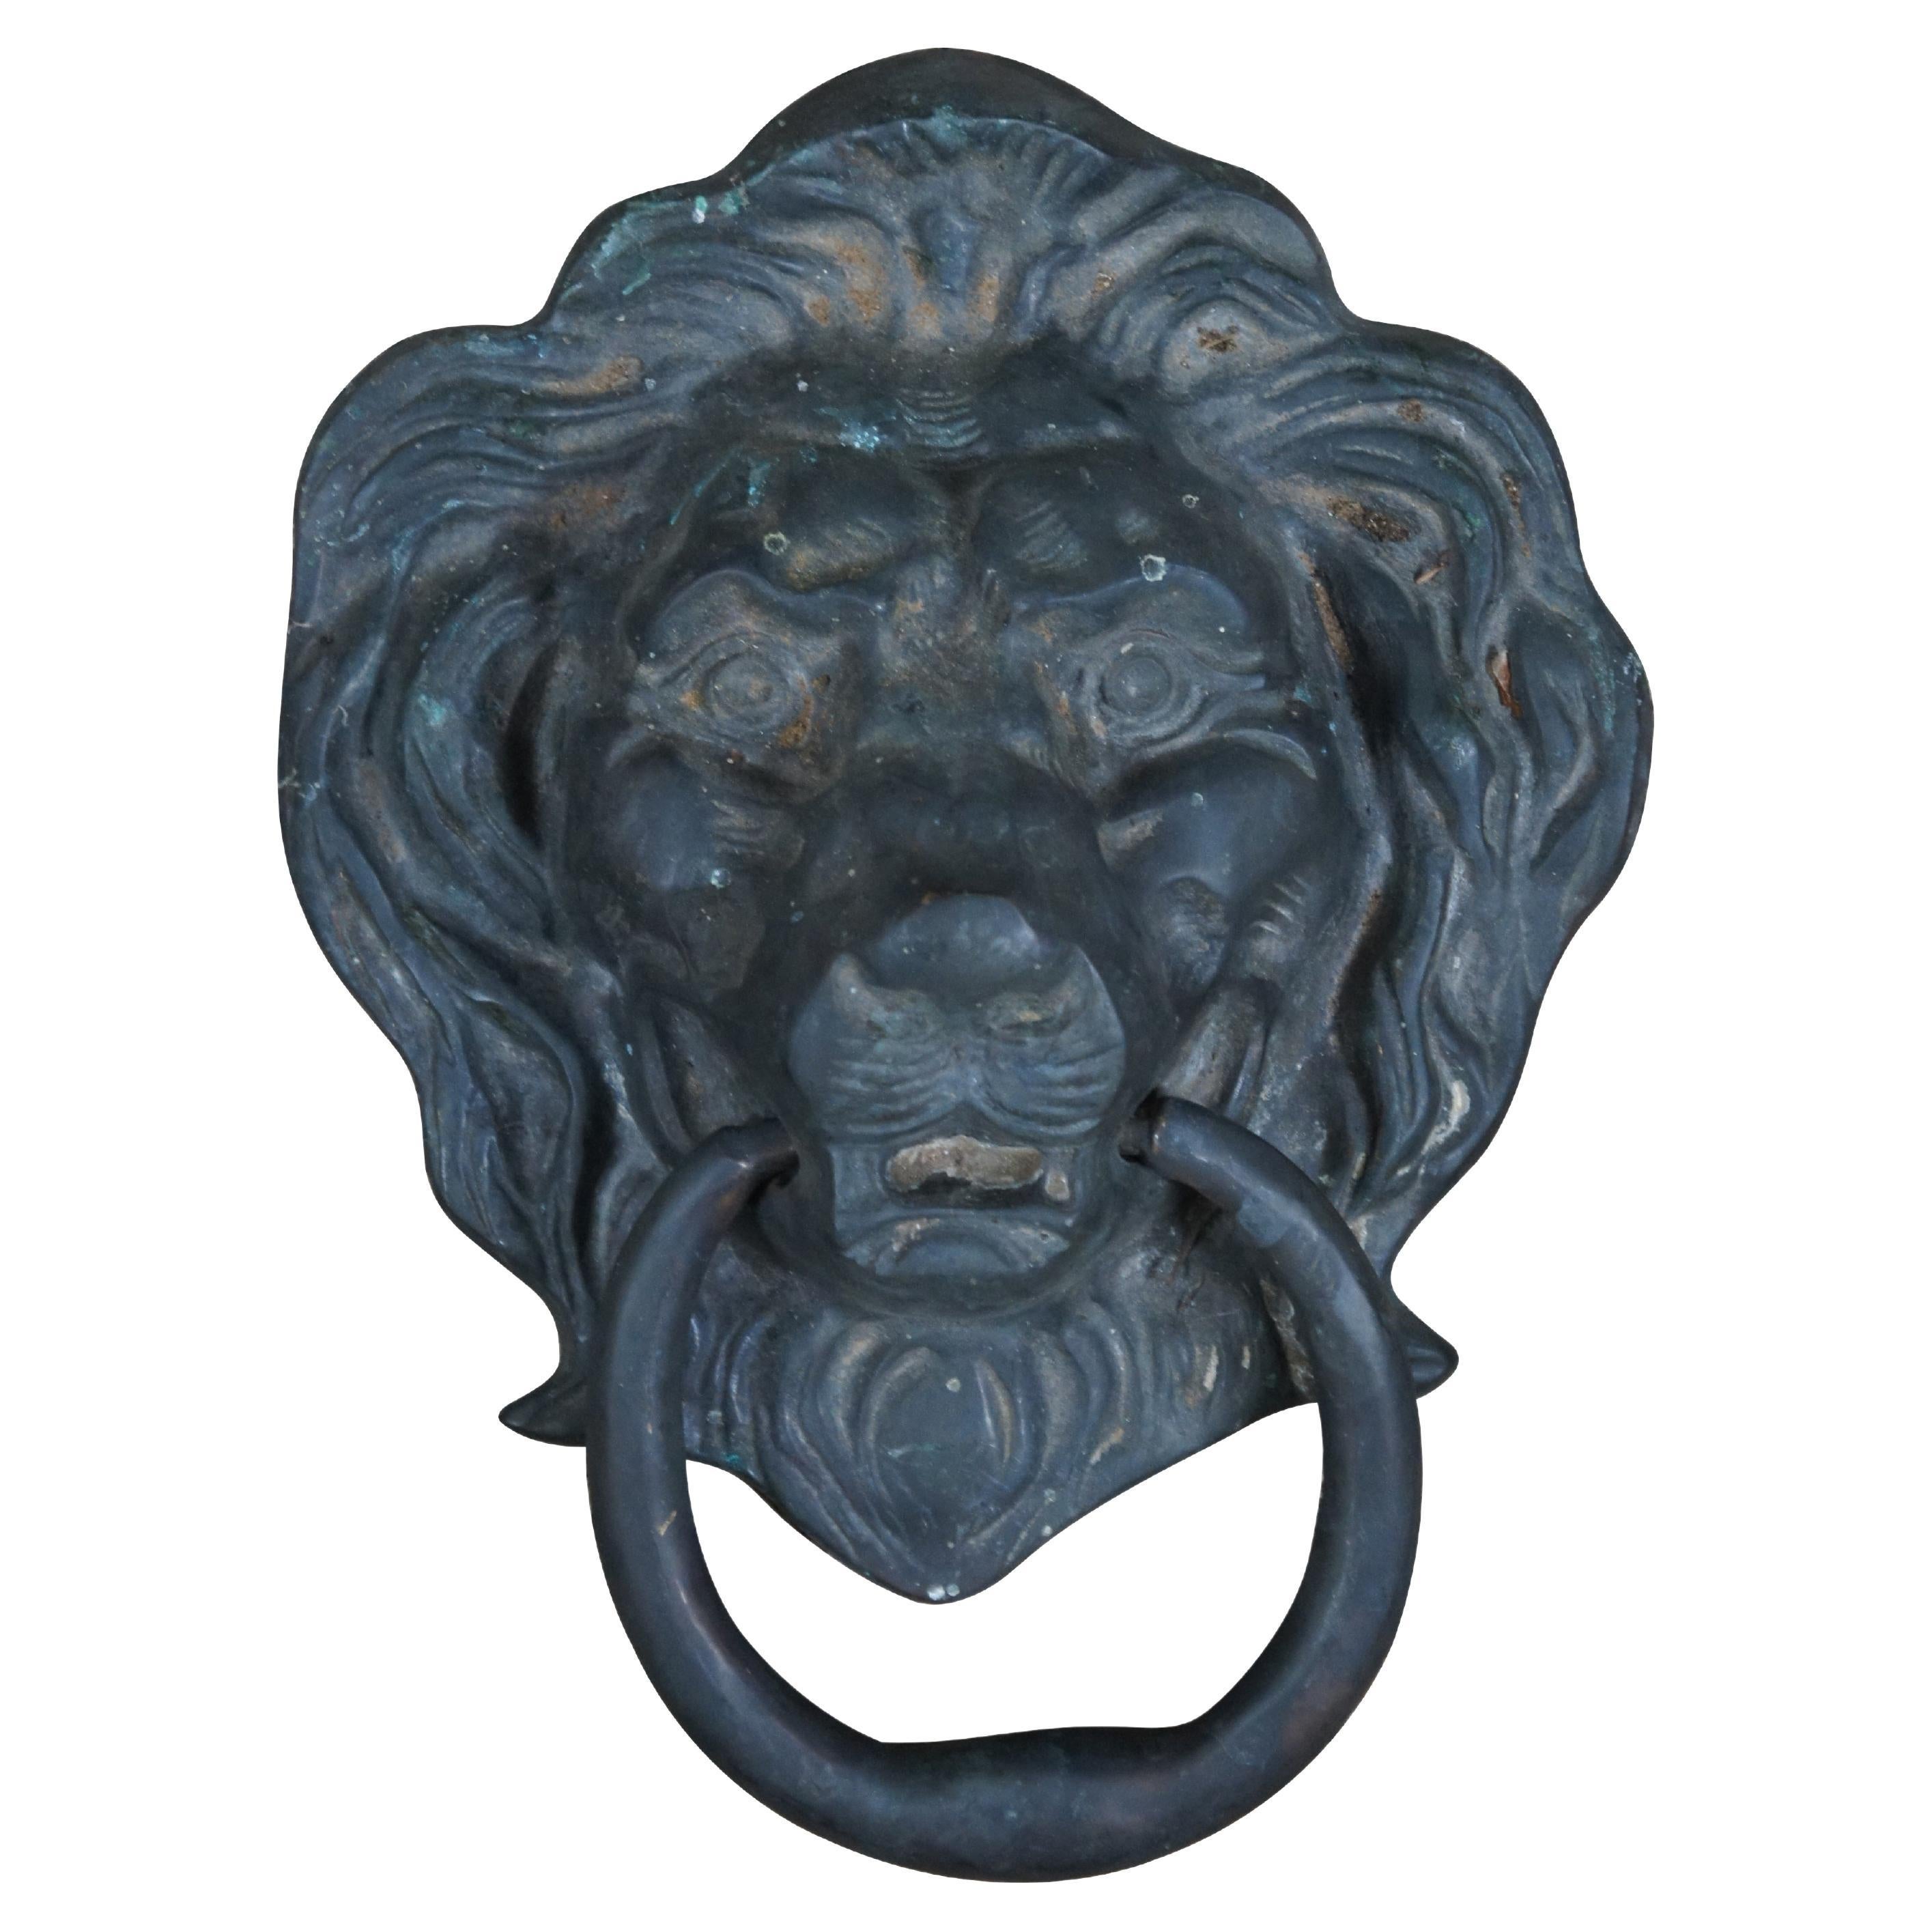 Antique Georgian Large Heavy Solid Brass Lion Head Door Knocker Hardware 11" (Quincaillerie de heurtoir de porte à tête de lion en laiton massif)